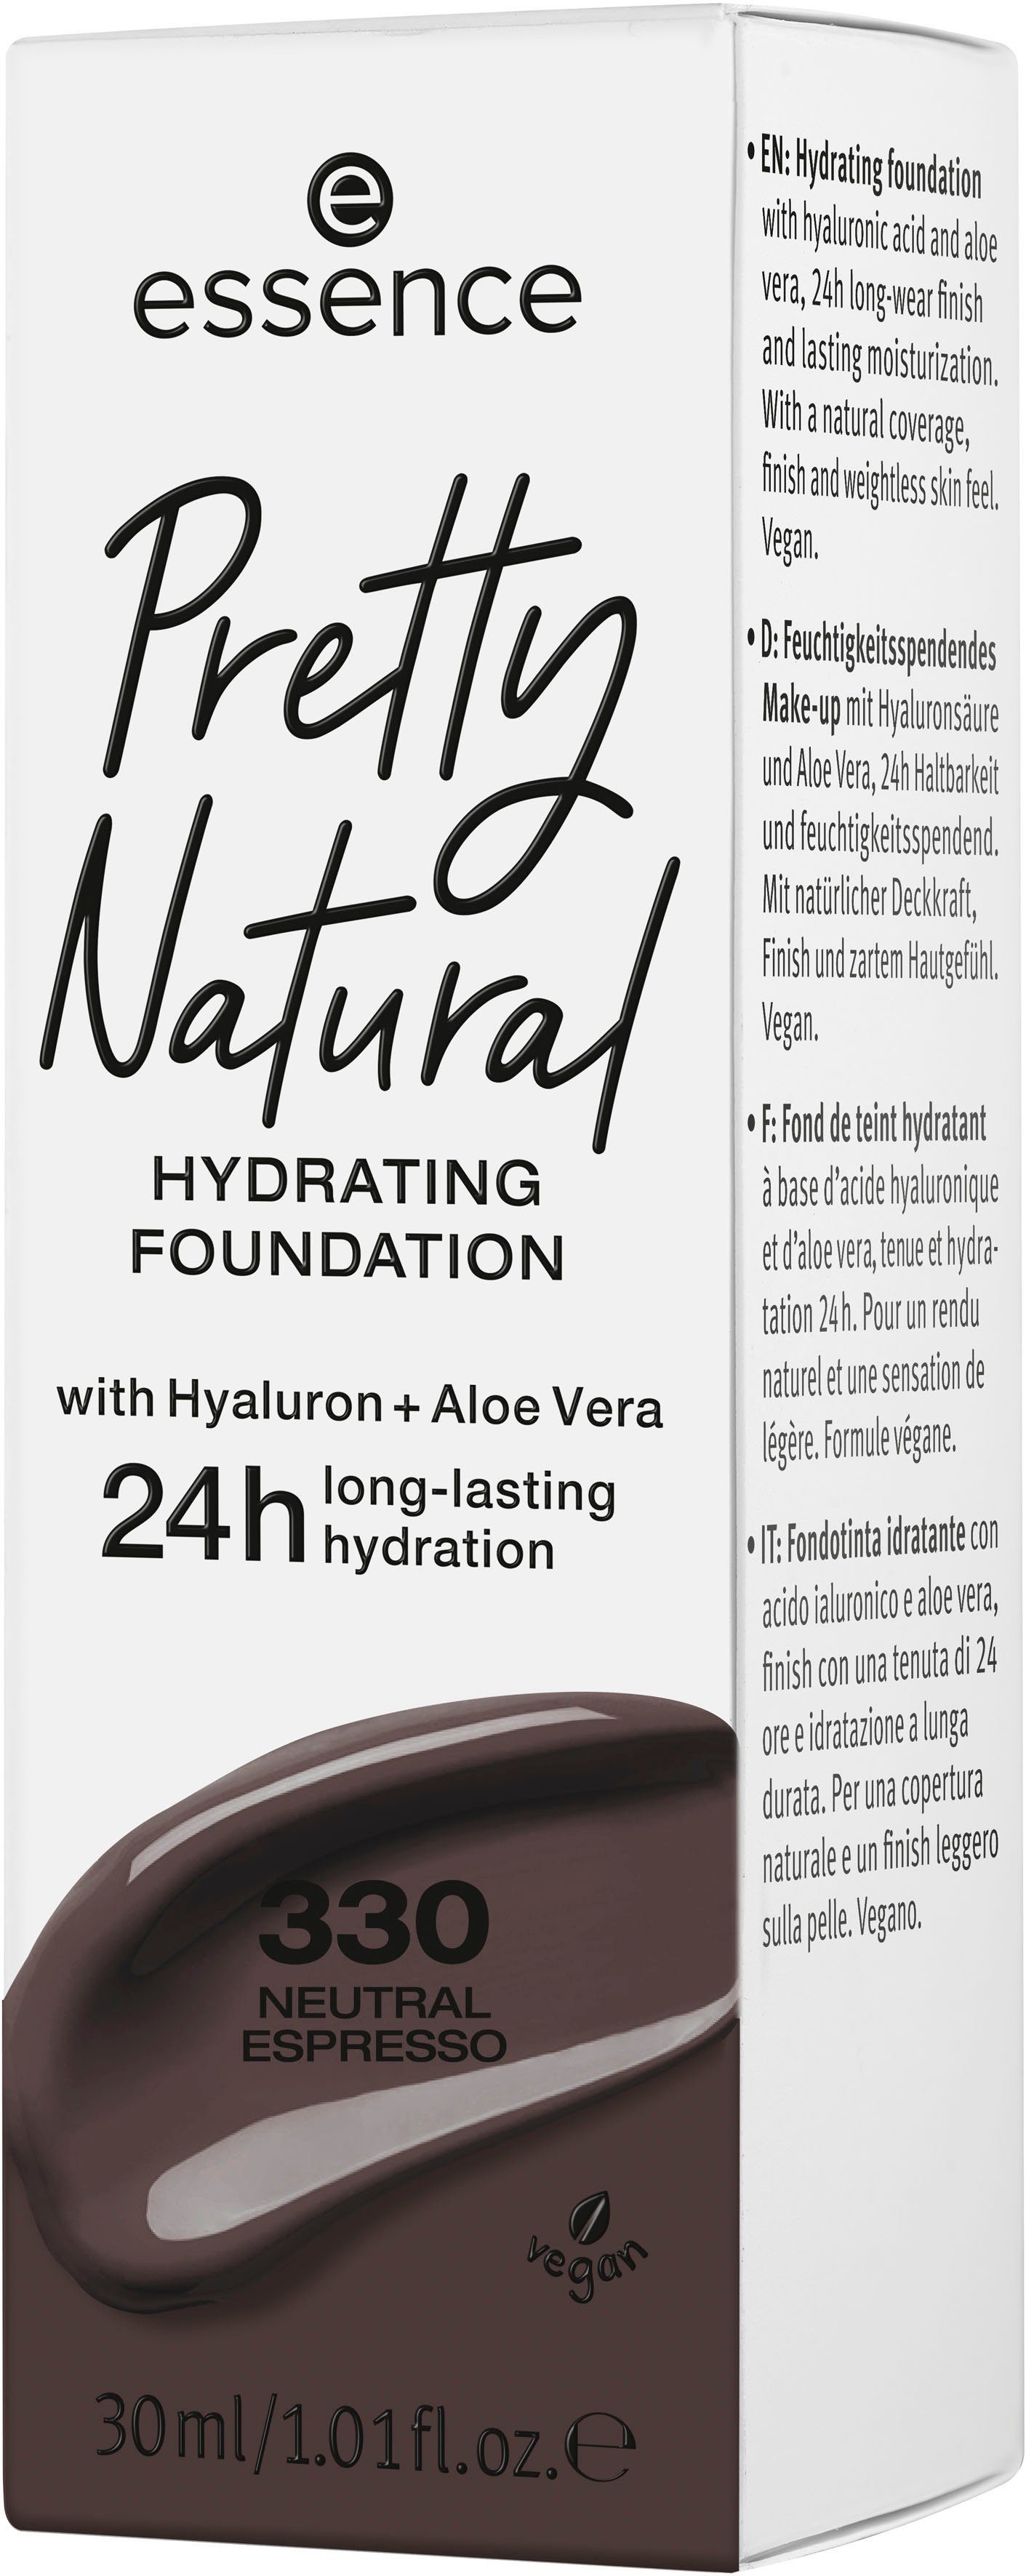 Pretty HYDRATING, Essence Neutral Espresso Natural Foundation 3-tlg.